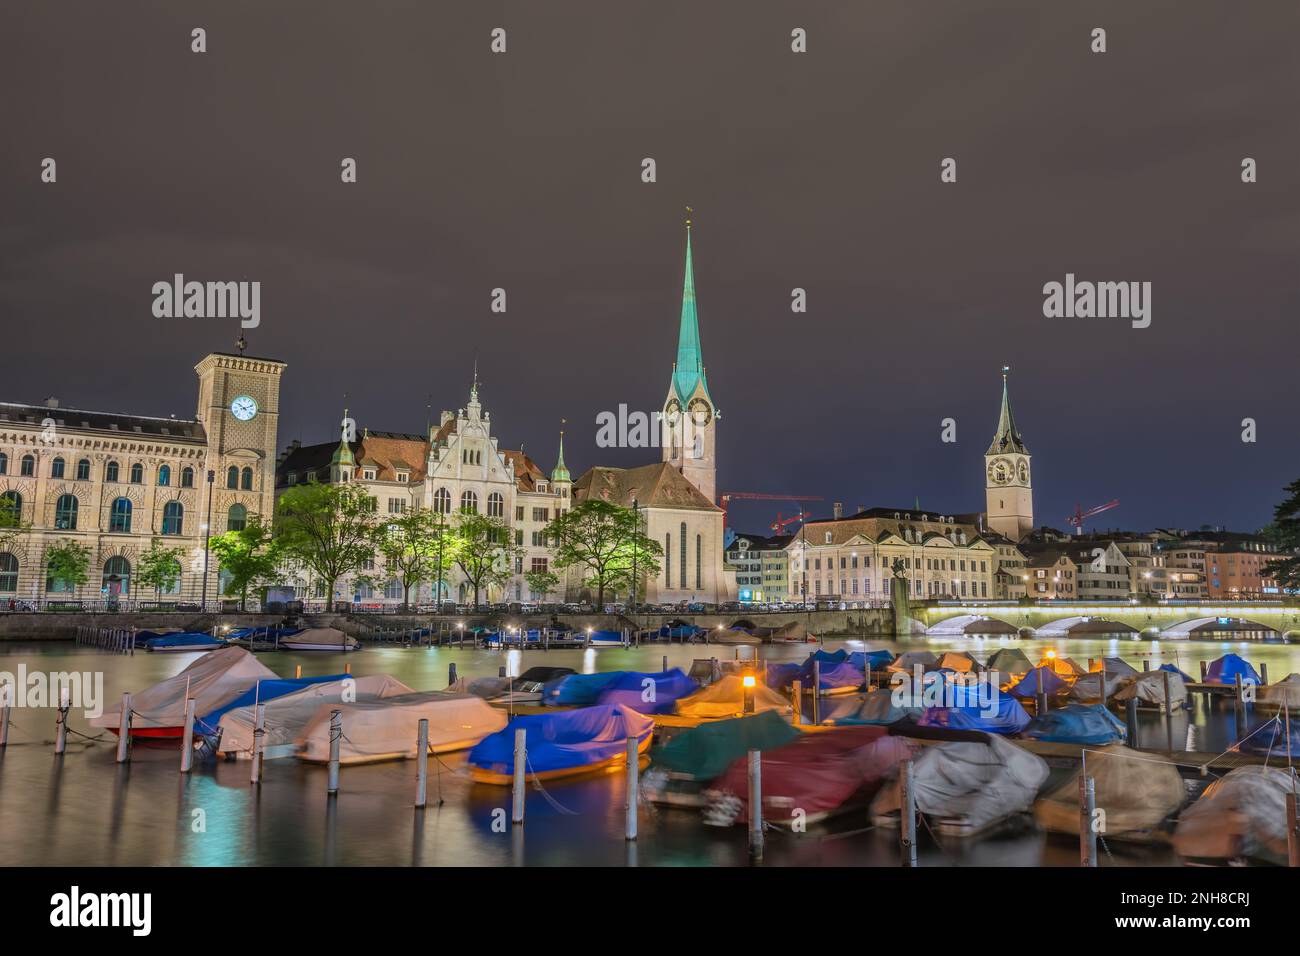 Zurigo Svizzera, skyline notturno della città presso la chiesa di Fraumunster e il ponte Munster Foto Stock